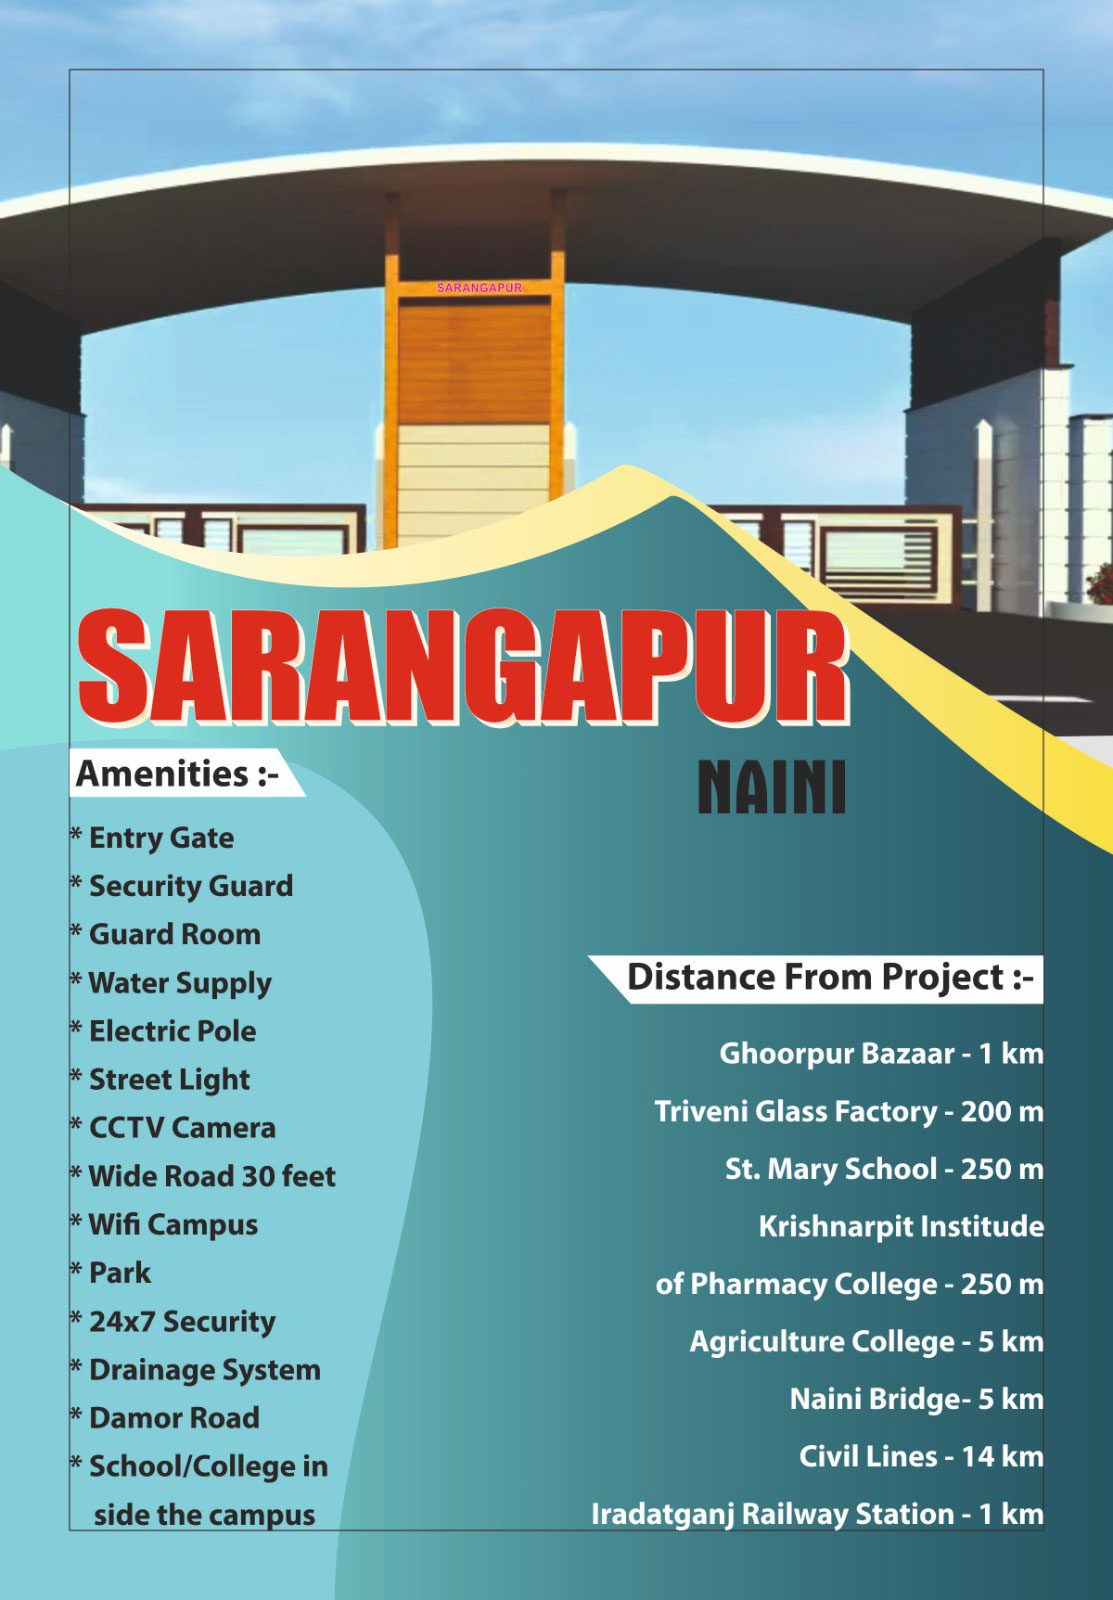 Sarangapur